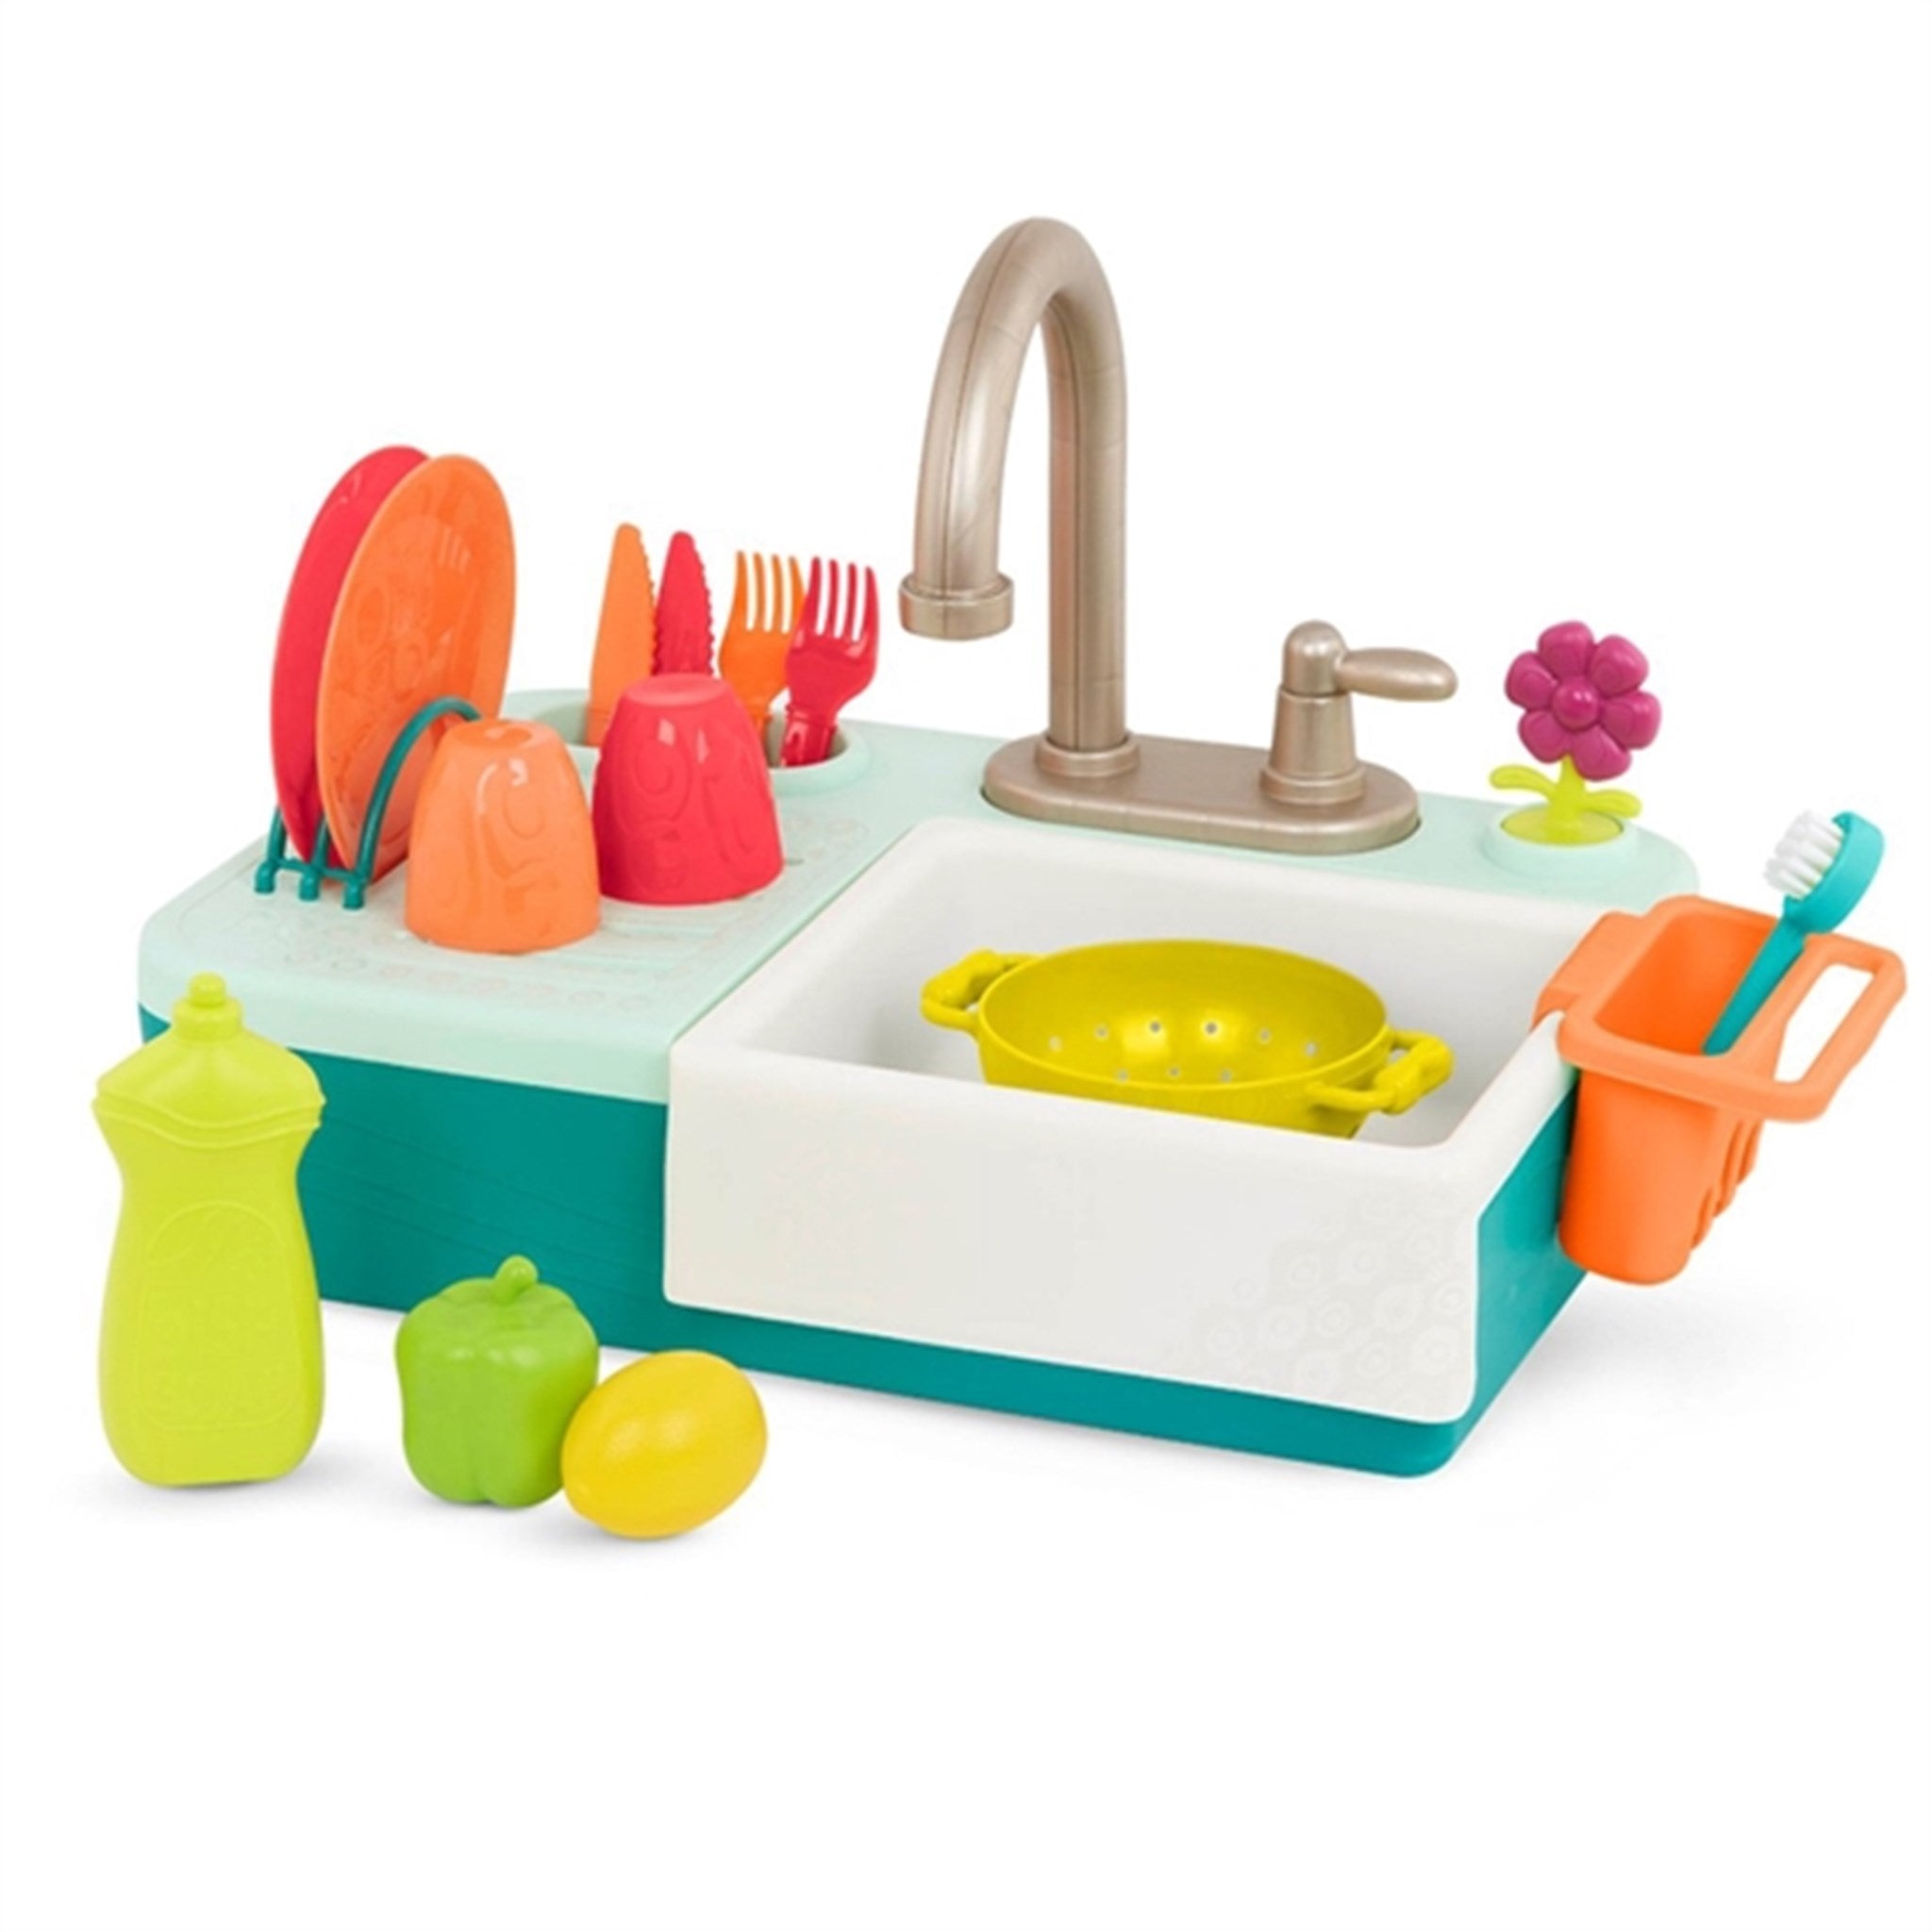 B-toys Kitchen Sink